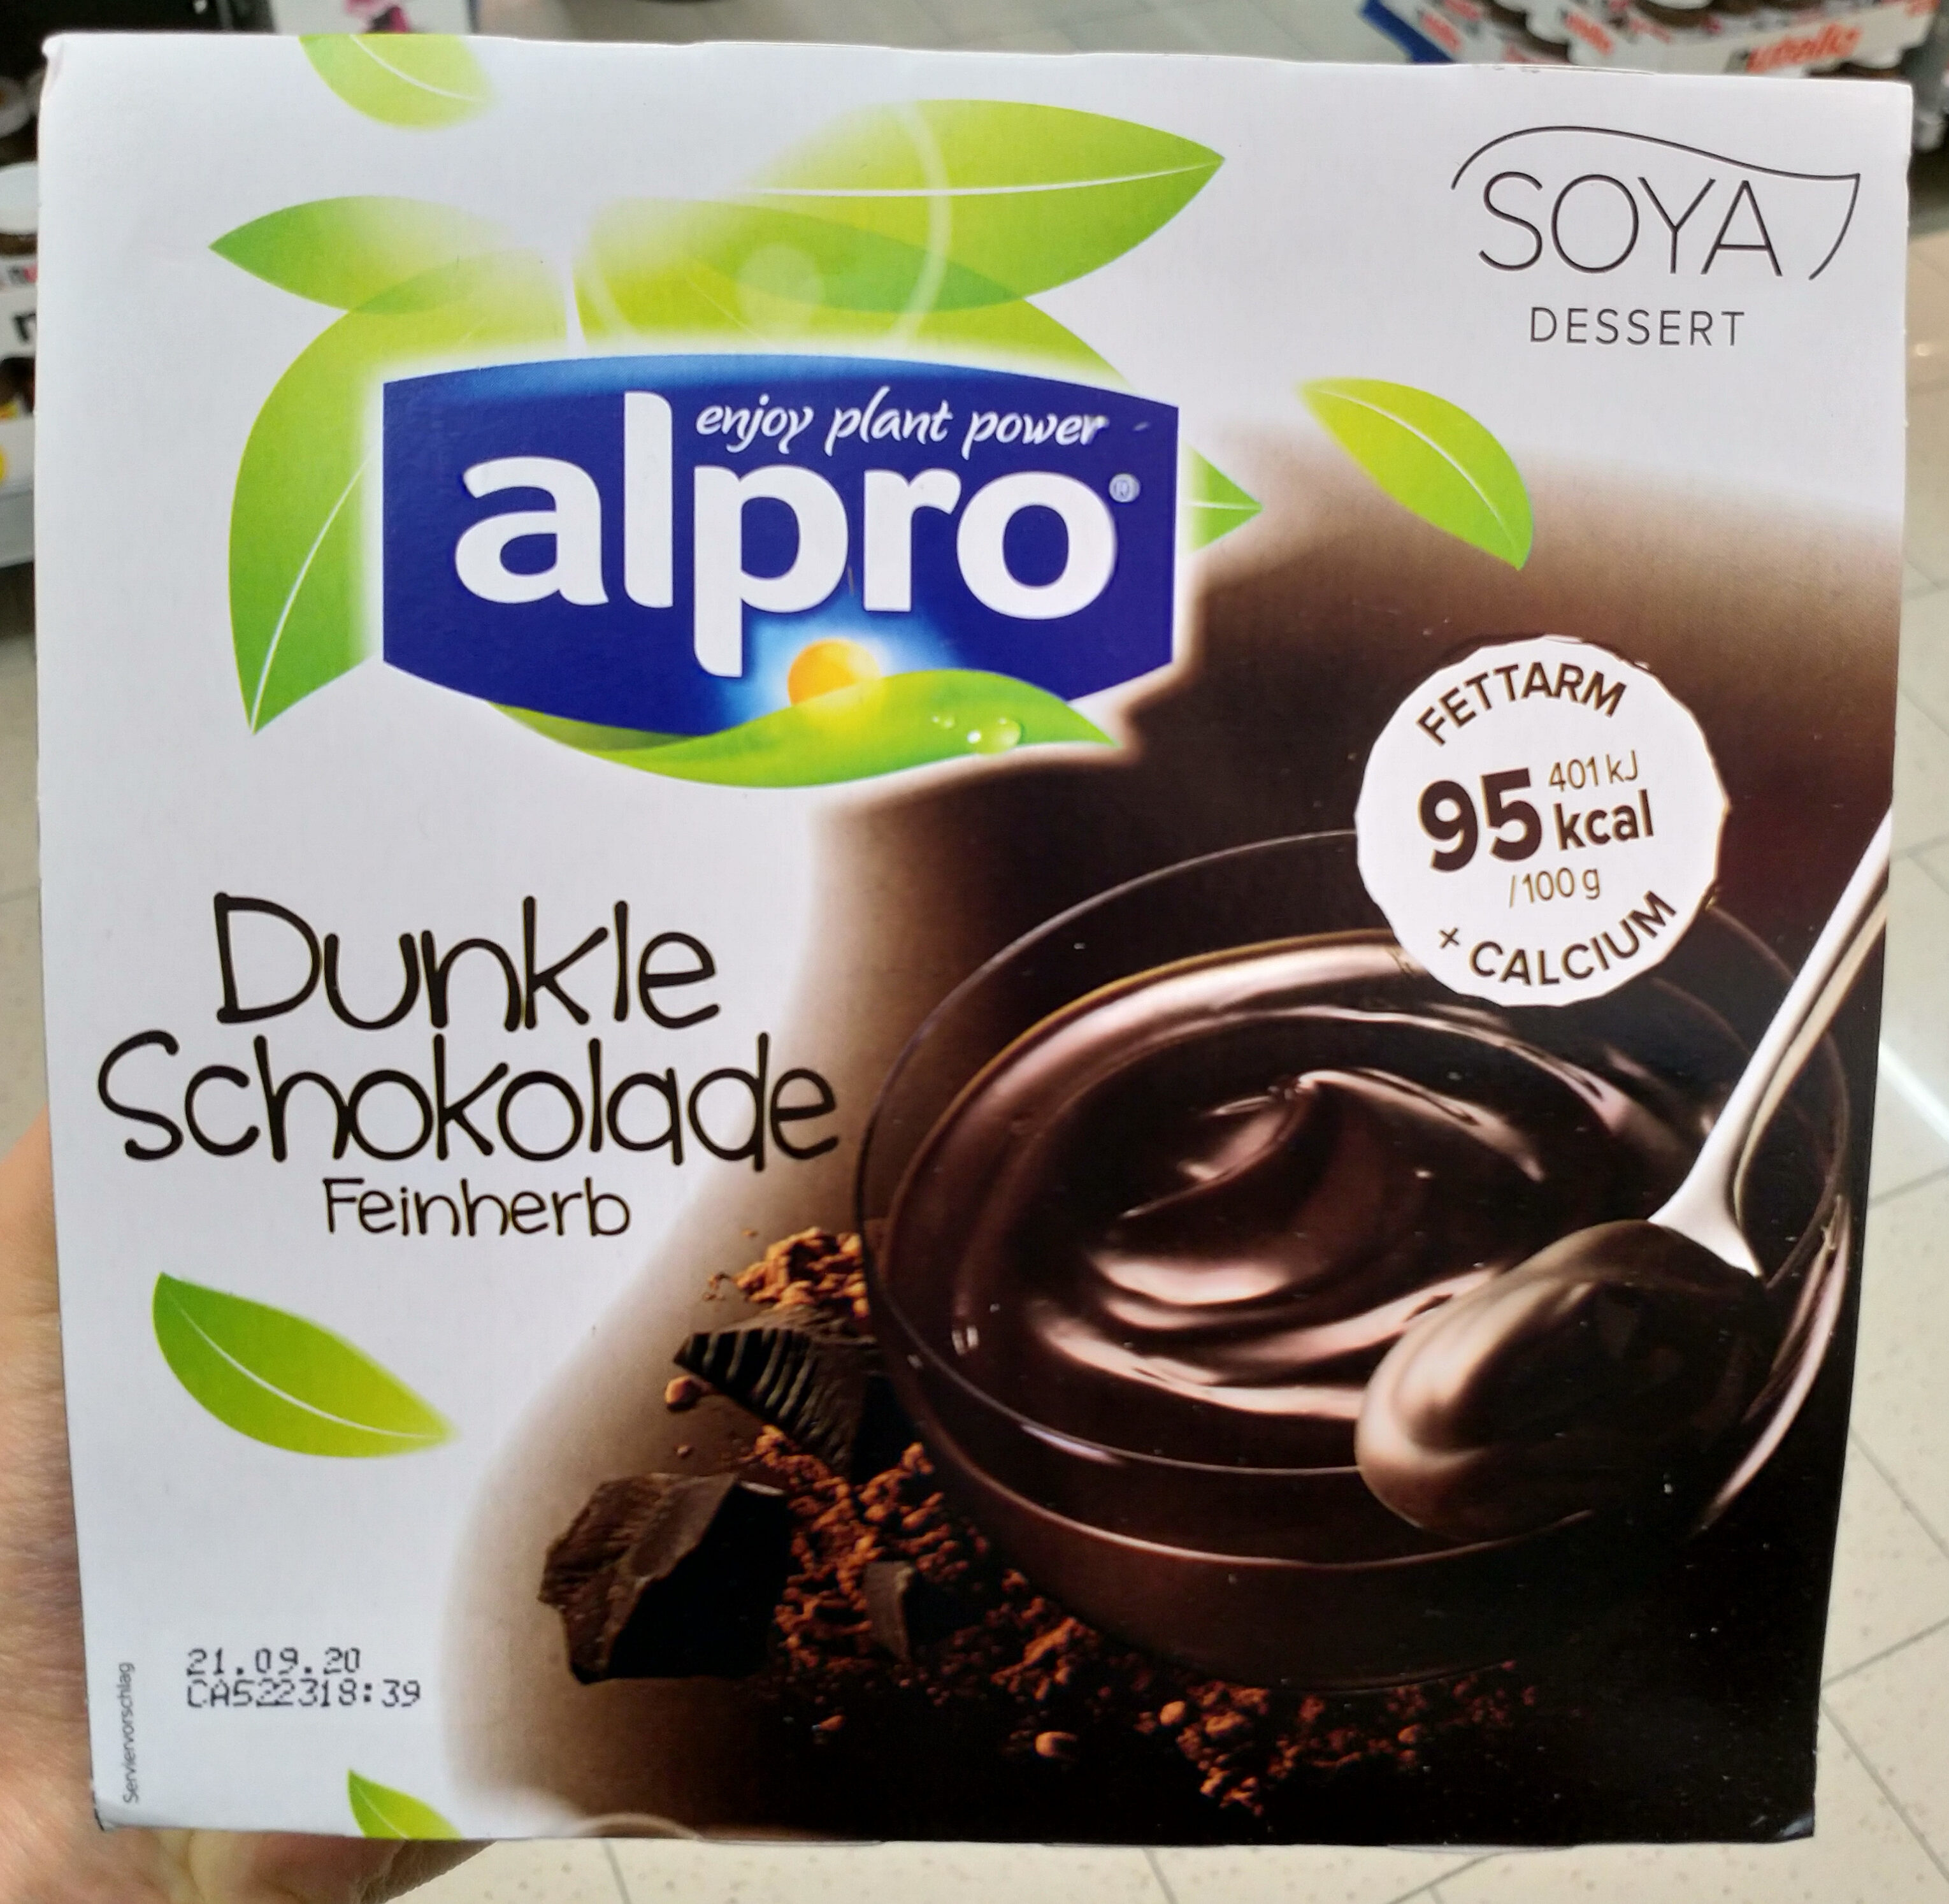 Soya Dessert dunkel Schokolade - Product - de